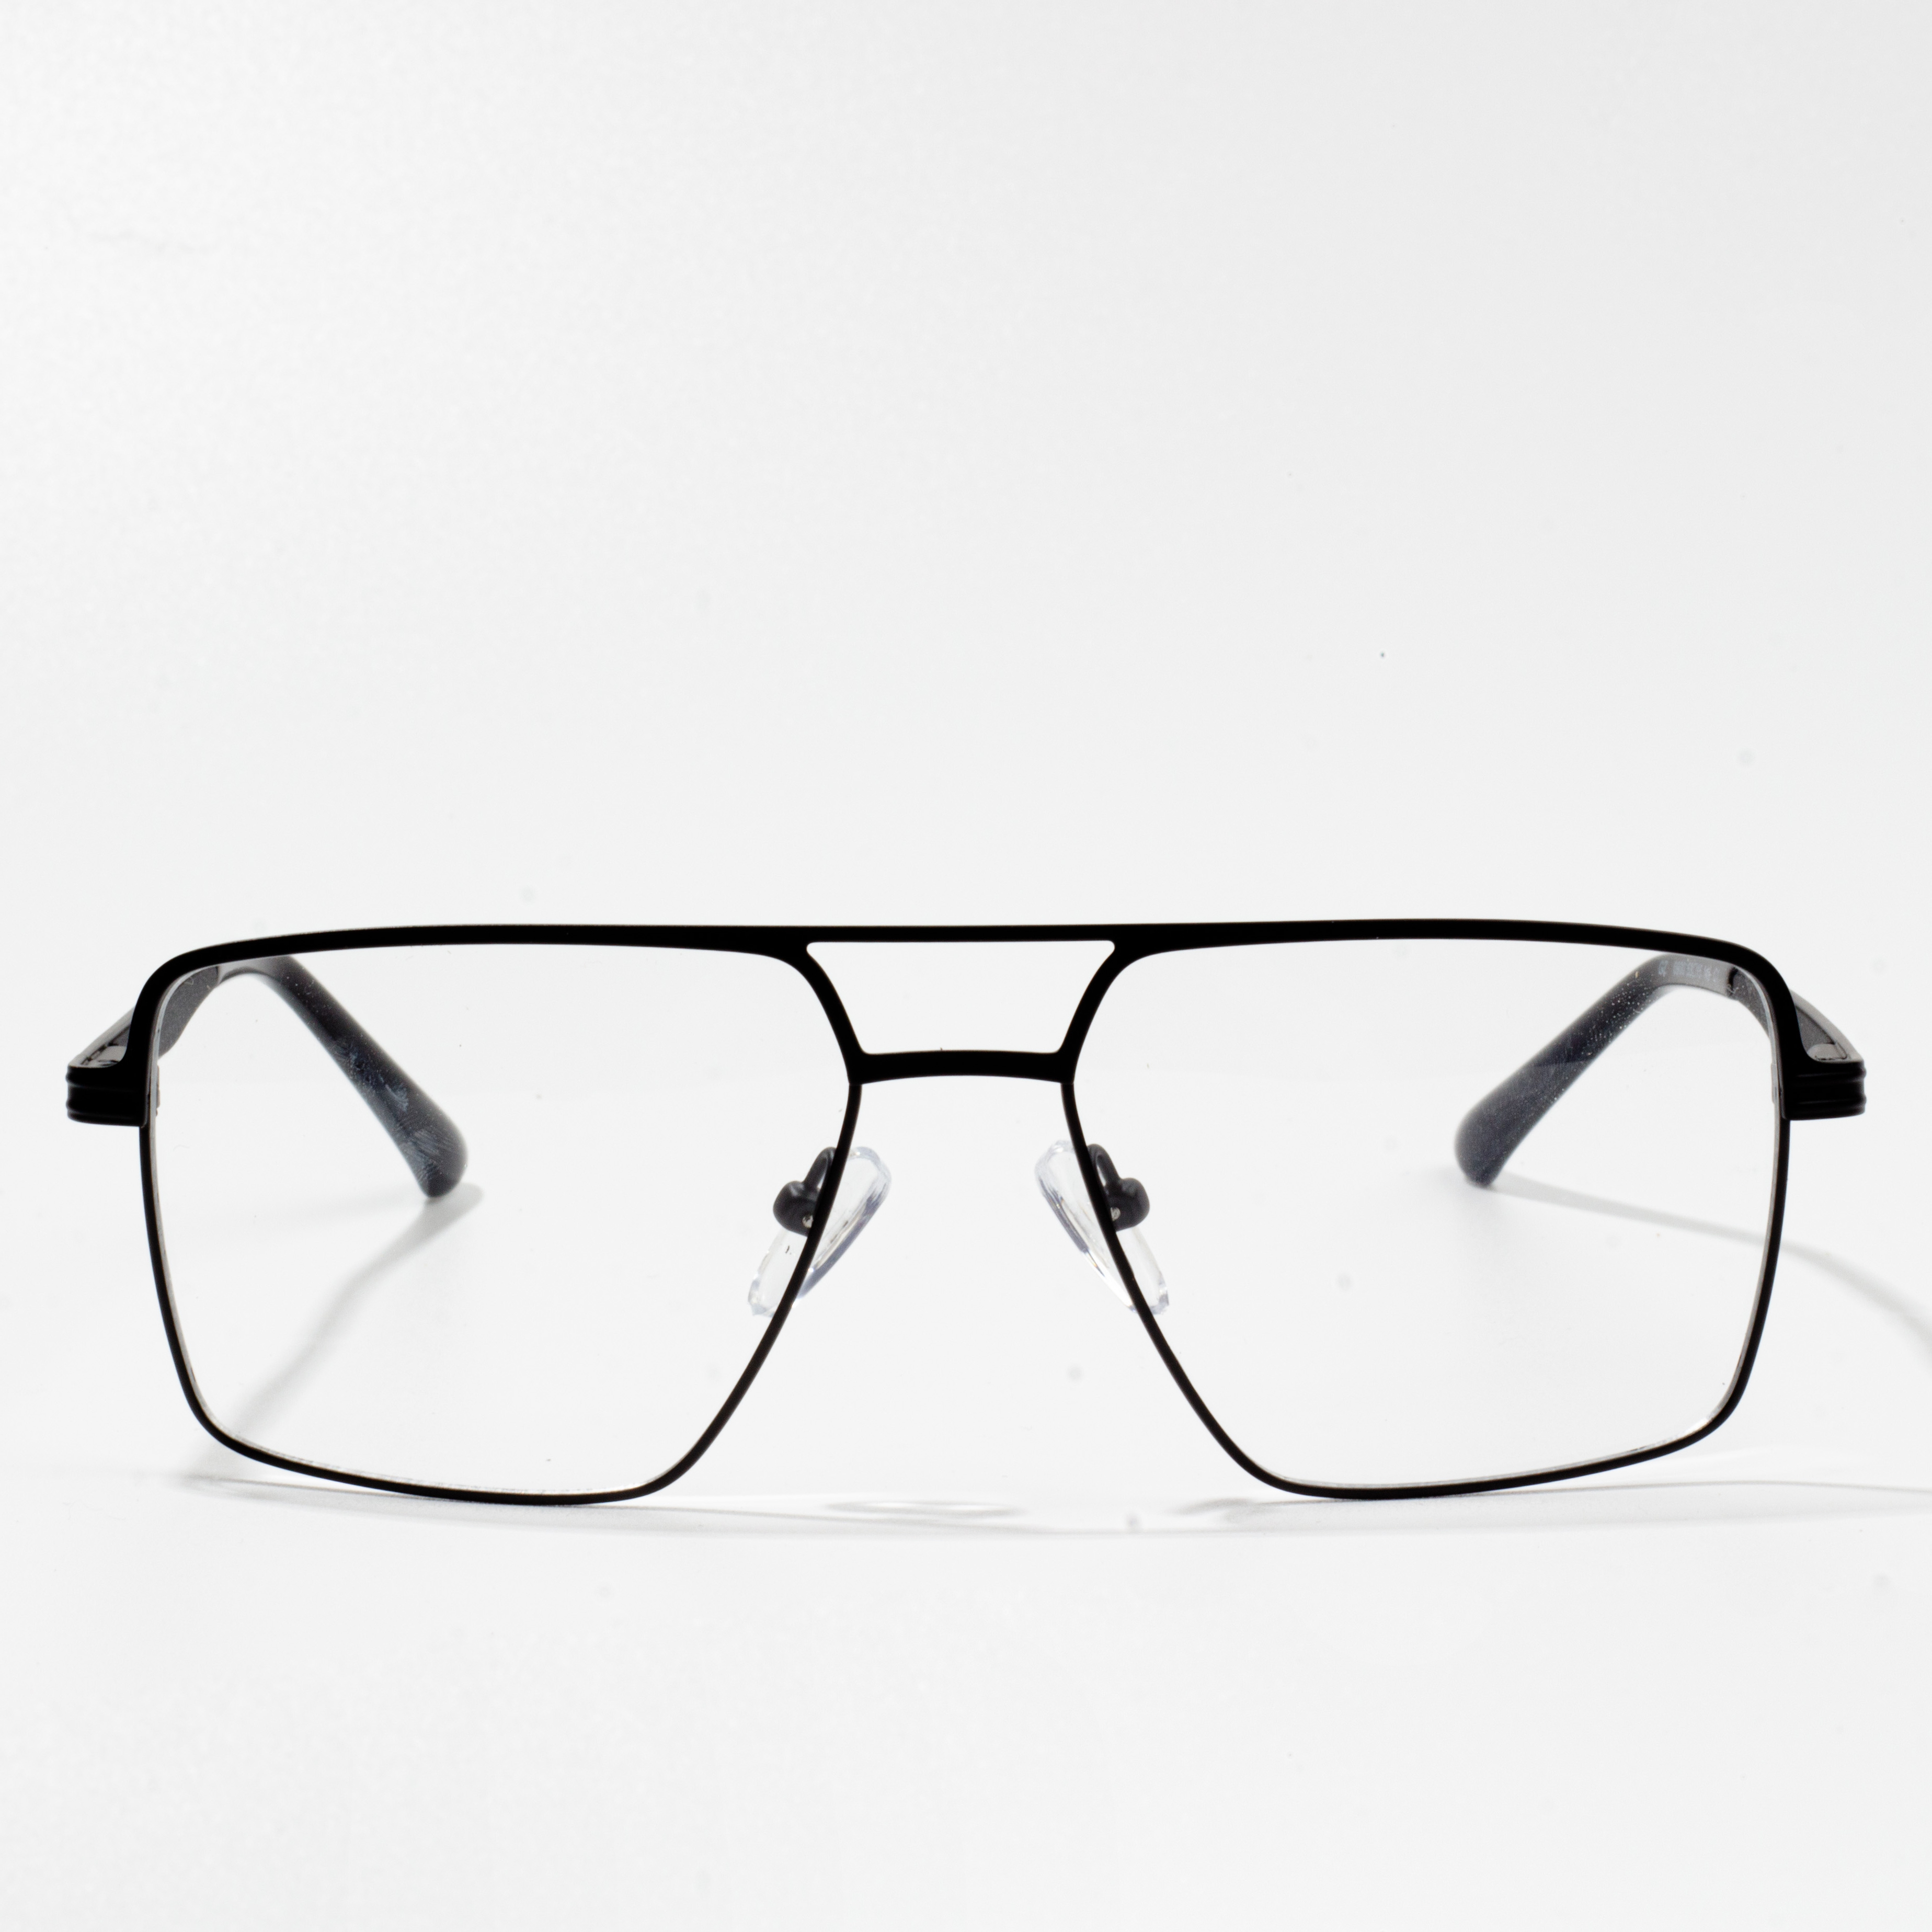 fframiau eyeglass